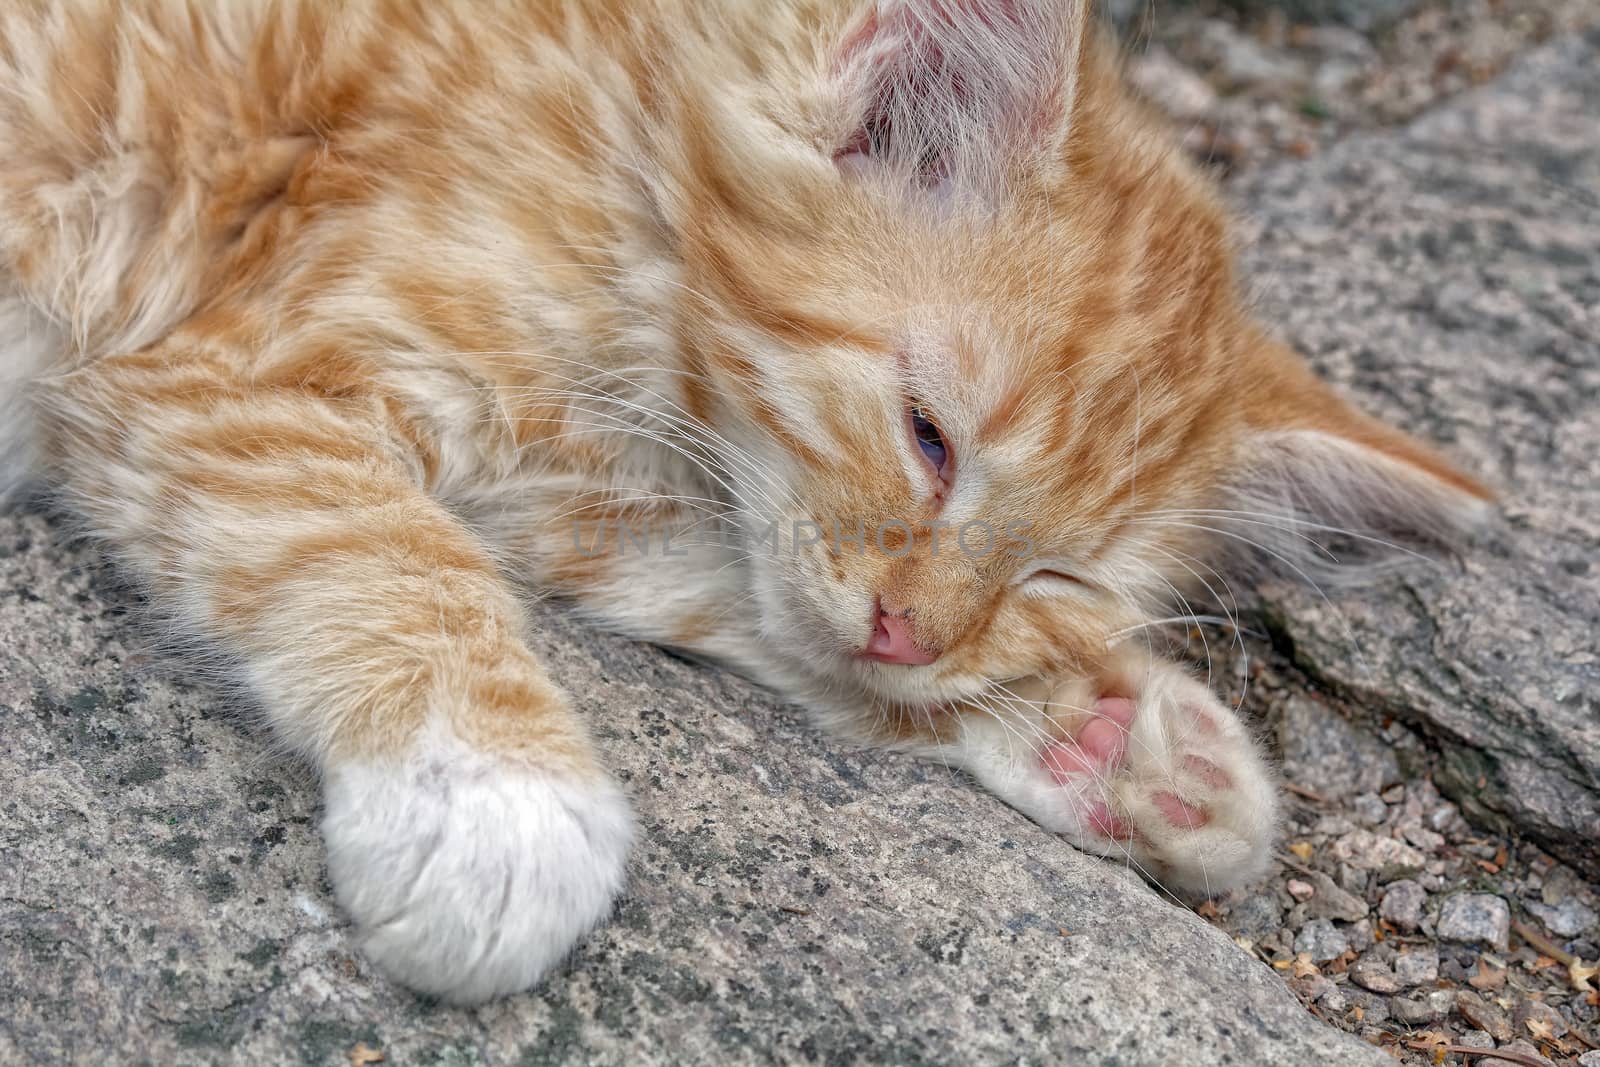 Nice rusty sleeping kitten on the stone.